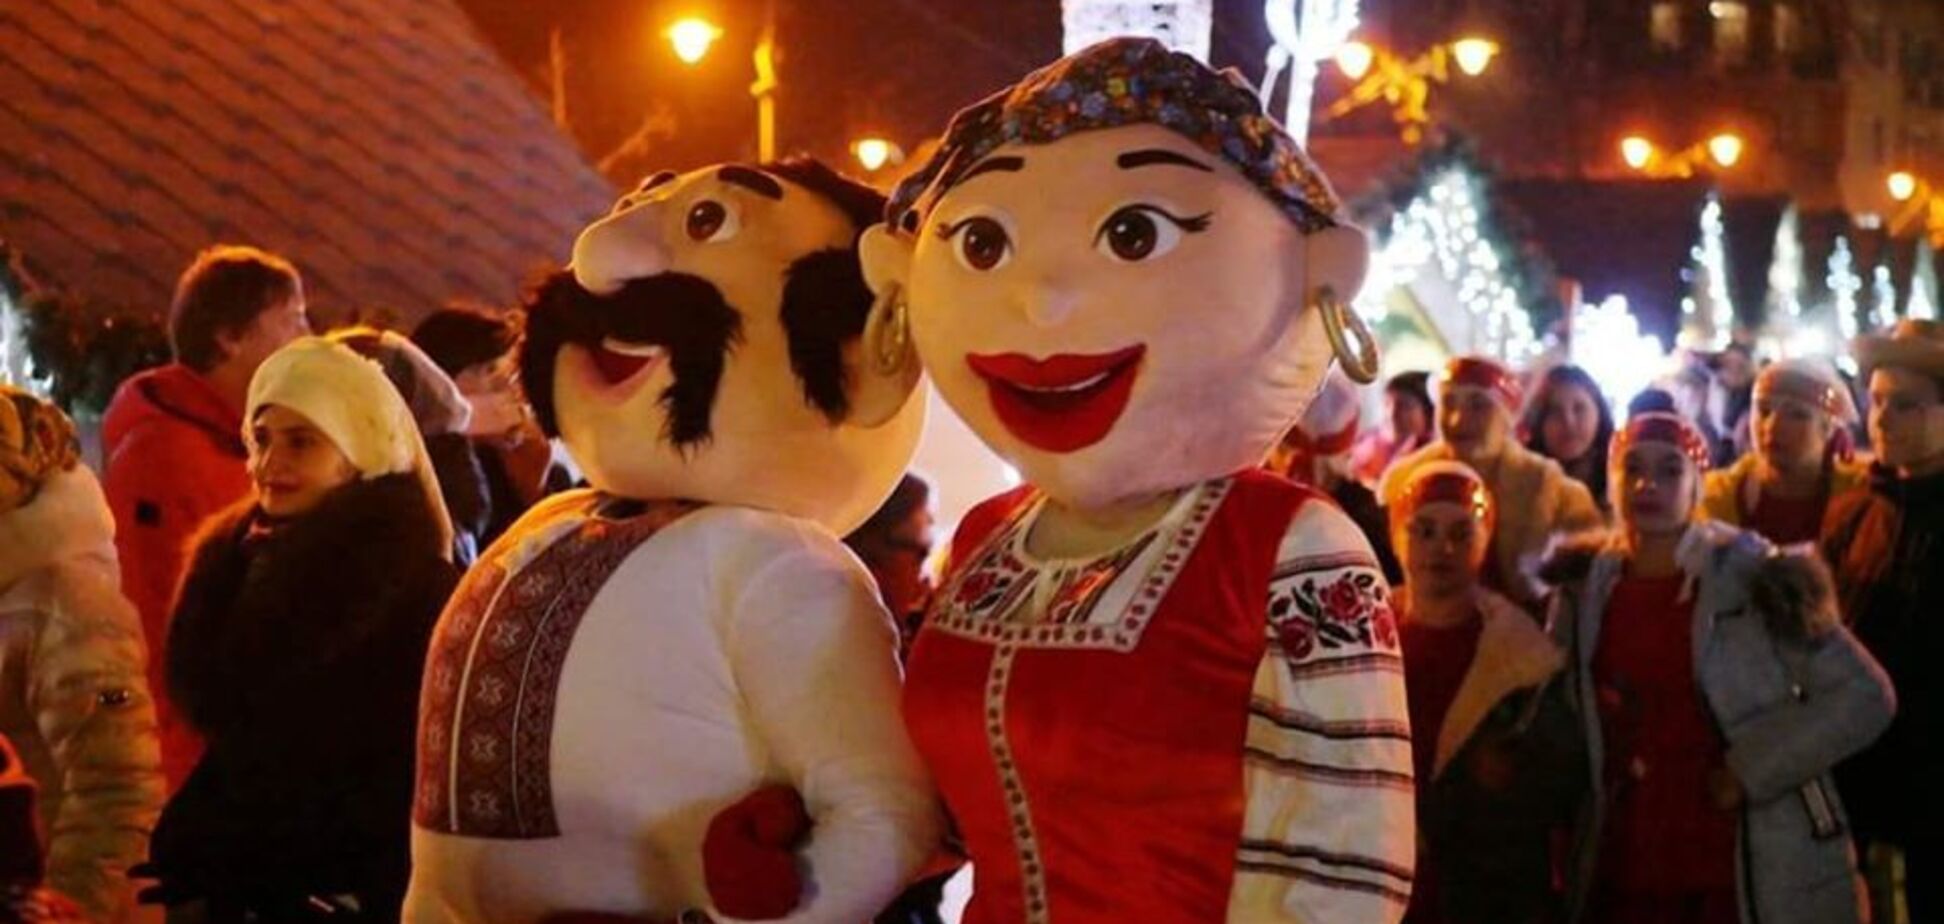 Російський сарафан і шароварщина: в мережі спалахнув скандал через ярмарок в Івано-Франківську